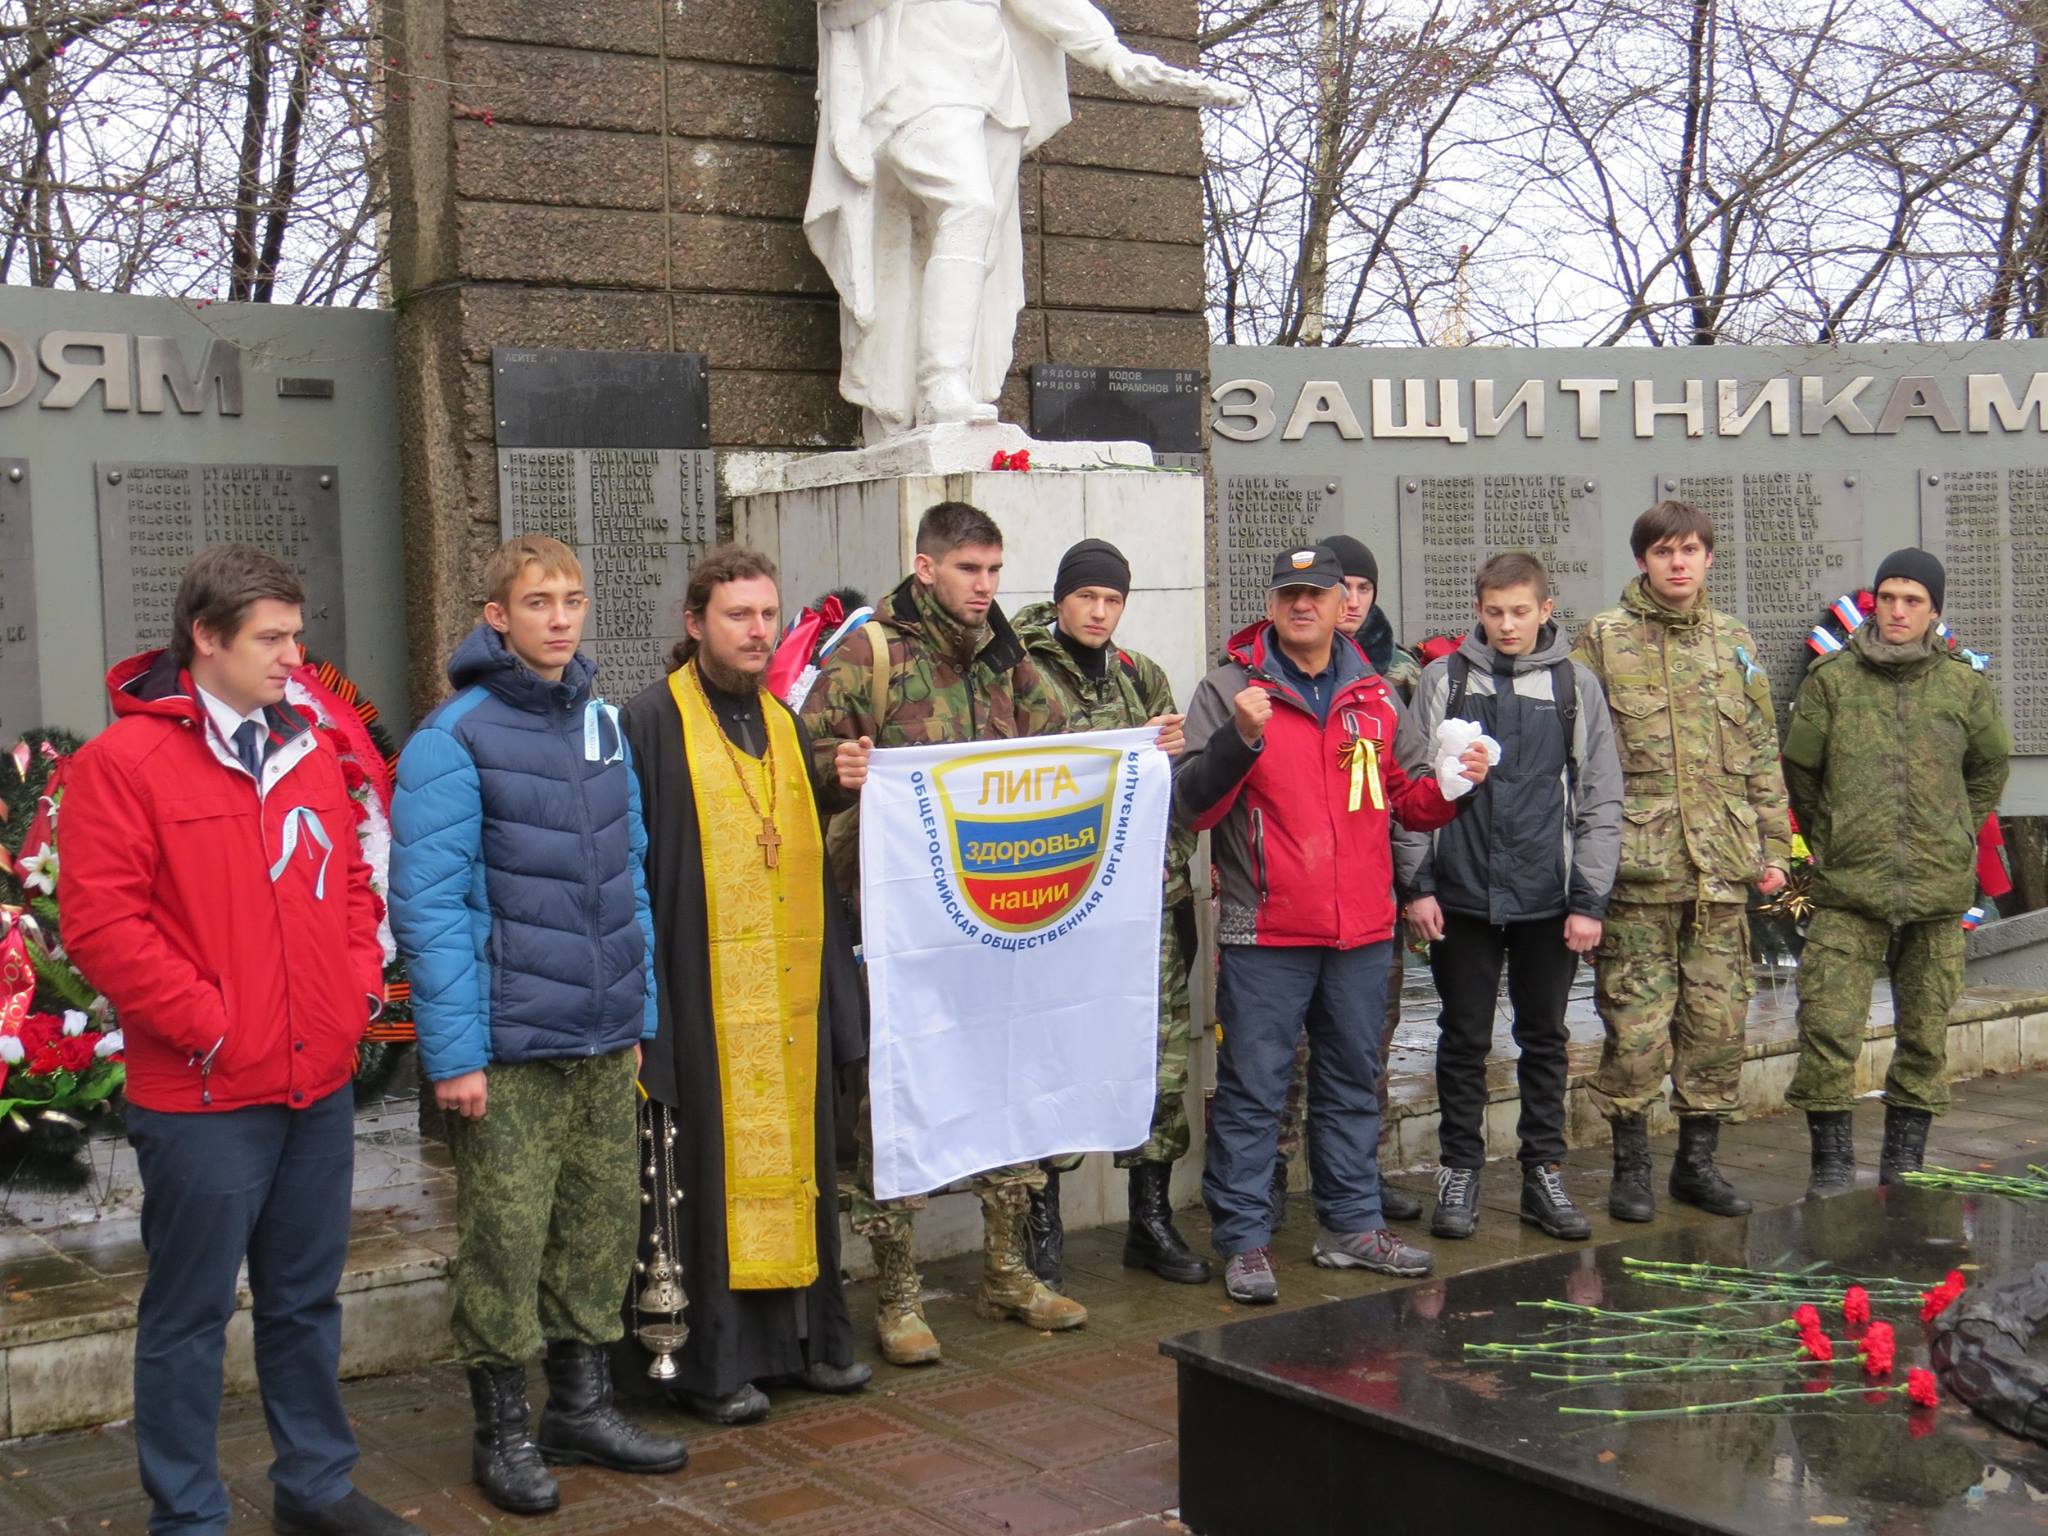 Лига здоровья нации, православные следопыты, Россия молодая, волонтеры России - совершили поход по местам боевой славы "Лобня - воинский мемориал в Мытищах"